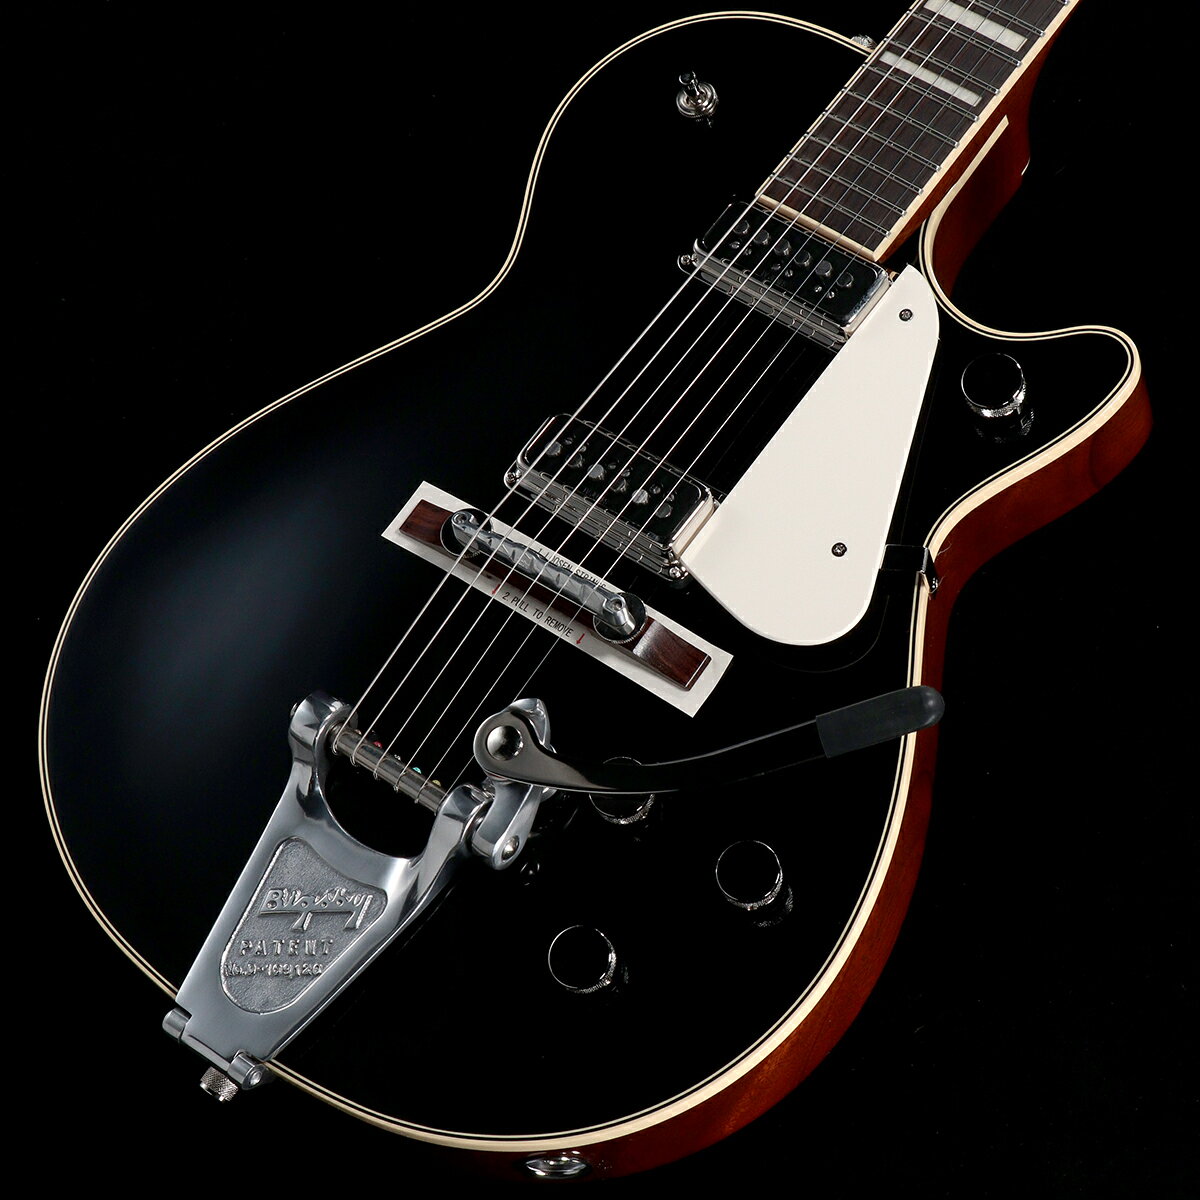 グレッチにとって重要な黄金時代であり、多作な期間だった、1950年代〜1960年代初期にインスピレーションを得て誕生した、Vintage Select Editionギターは、数ある楽器の伝統の中でも“最高のもの”を評価するプレイヤーのためにデザインされています。 Bigsby(R)を搭載した、G6128T-53Vintage Select '53 DuoJet(TM)は、グレッチの最初にして最愛のモデルの1機種を巧みに再現した新たなテイクで、その遺産をロックさせます。 Duo Jetは、1953年にグレッチのフラッグシップ・モデルとしてデビューしました。その特徴的な音のパワーとパンチ感は、チェンバード・マホガニーボディ構造によってもたらされ、トップとボディ間の隙間を共鳴させることで、ハーモニックな豊かさを増幅させ、よりはっきりした明瞭なトーンを実現しています。 現在のモデルは、グレッチ最高の“スクリプト”ヘッドストック・ロゴを再現し、ヴィンテージDyna Sonic(TM)サウンドを忠実に再現する、2基のTV Jones(R) T-Armond(TM) PUなど、特別な仕様が採用されています。 ■重量:3.53kg ■S/N:JT23083323 製品仕様 Body Finish GlossBody Shape Jet?Body Material MahoganyBracing ChamberedBody Binding Aged WhiteBody Depth 2" &#40;51 mm&#41;Neck Material MahoganyNeck Finish Gloss UrethaneNeck Shape Standard "U"Neck Binding Aged WhiteFingerboard Radius 12" &#40;305 mm&#41;Fingerboard Material RosewoodNumber of Frets 22Fret Size Medium JumboNut Width 1.6875" &#40;42.86 mm&#41;Position Inlays Aged Pearloid BlocksNeck Plate NABridge Pickup TV JonesR T-Armond?Neck Pickup TV JonesR T-Armond?Controls Volume 1. &#40;Neck Pickup&#41;, Volume 2. &#40;Bridge Pickup&#41;, Master Volume, Master ToneSwitching 3-Position Toggle: Position 1. Bridge Pickup, Position 2. Bridge And Neck Pickups, Position 3. Neck PickupConfiguration TV JonesR / TV JonesBridge Aluminum CompensatedTuning Machines GroverR Sta-Tite? Die-CastPickguard 1-Ply Vintage WhiteControl Knobs Plain